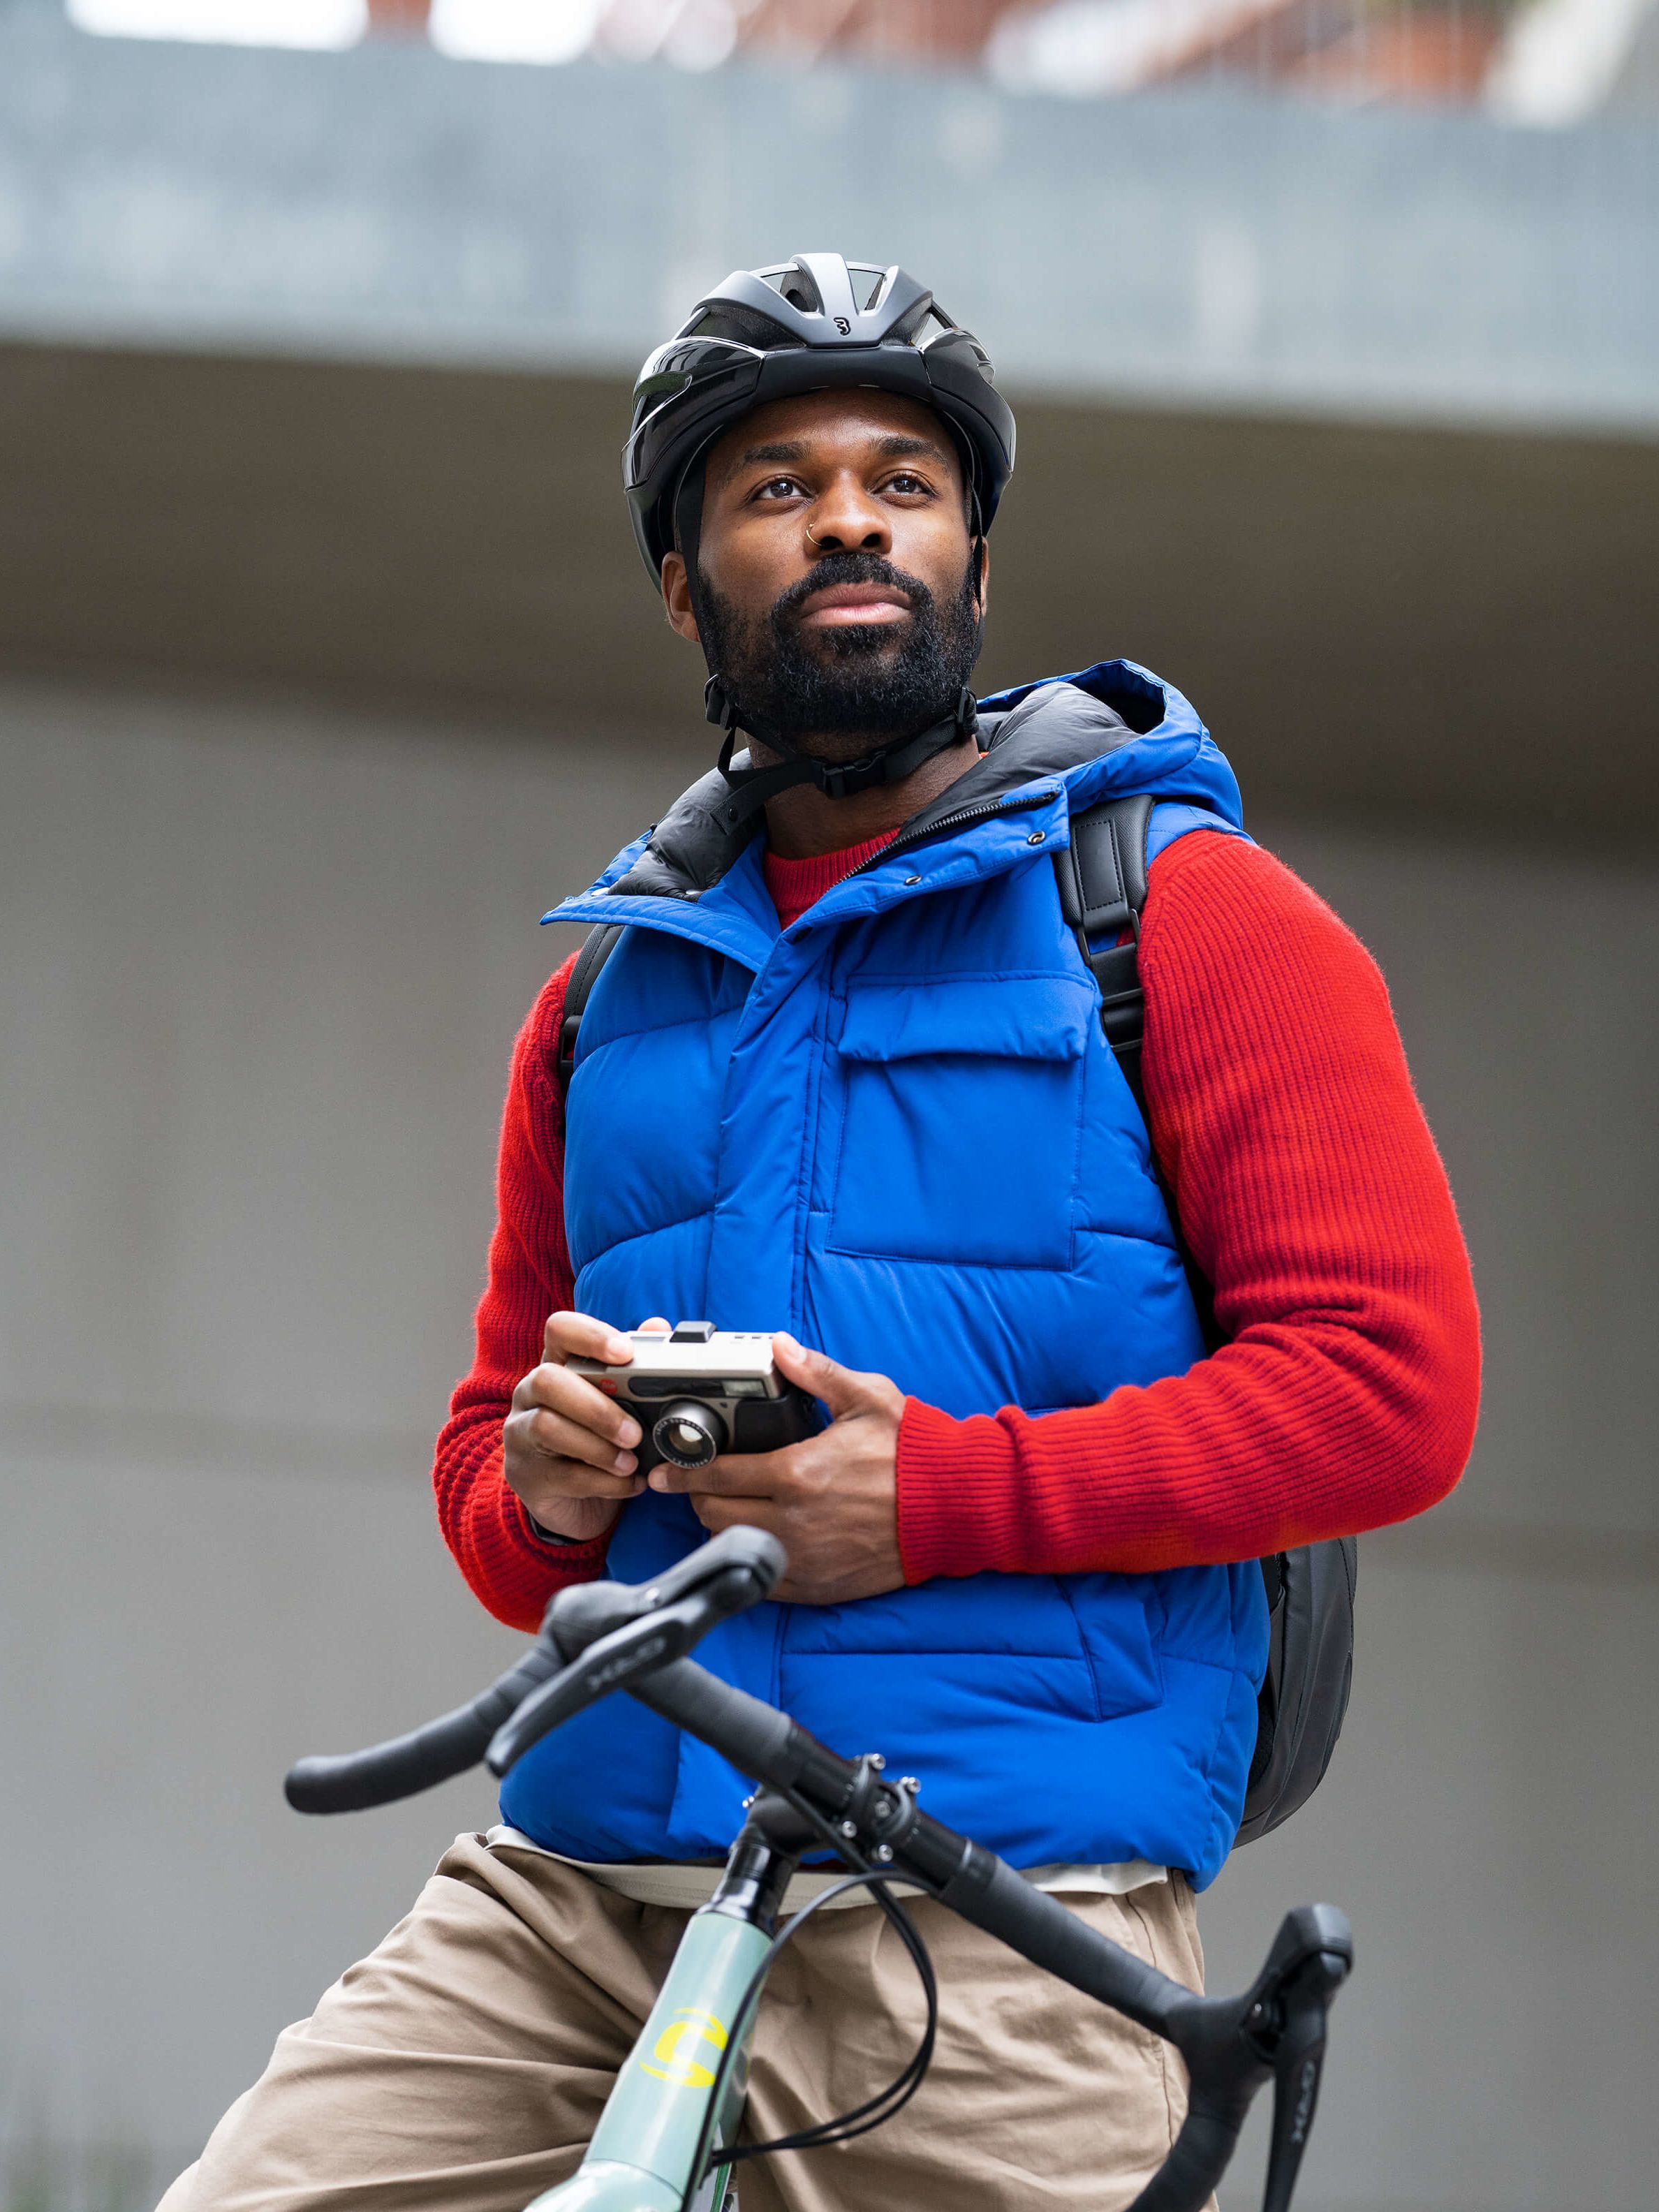 Mann mit Kamera in der Hand auf seinem Fahrrad.